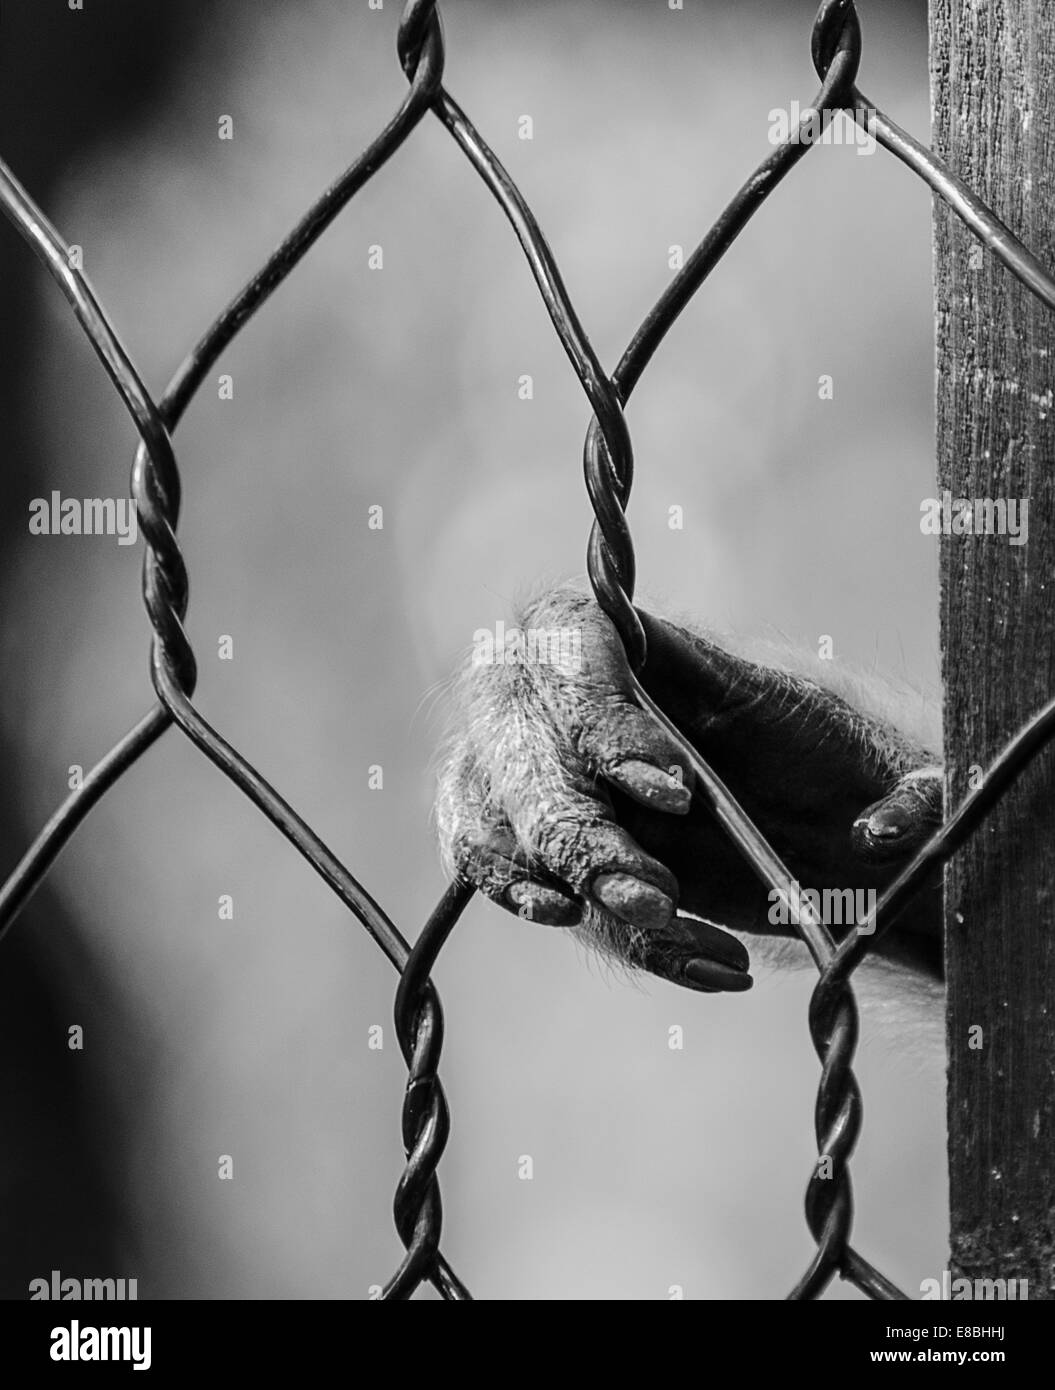 Monkey mano detrás de la jaula del Zoo triste prisionero Foto de stock